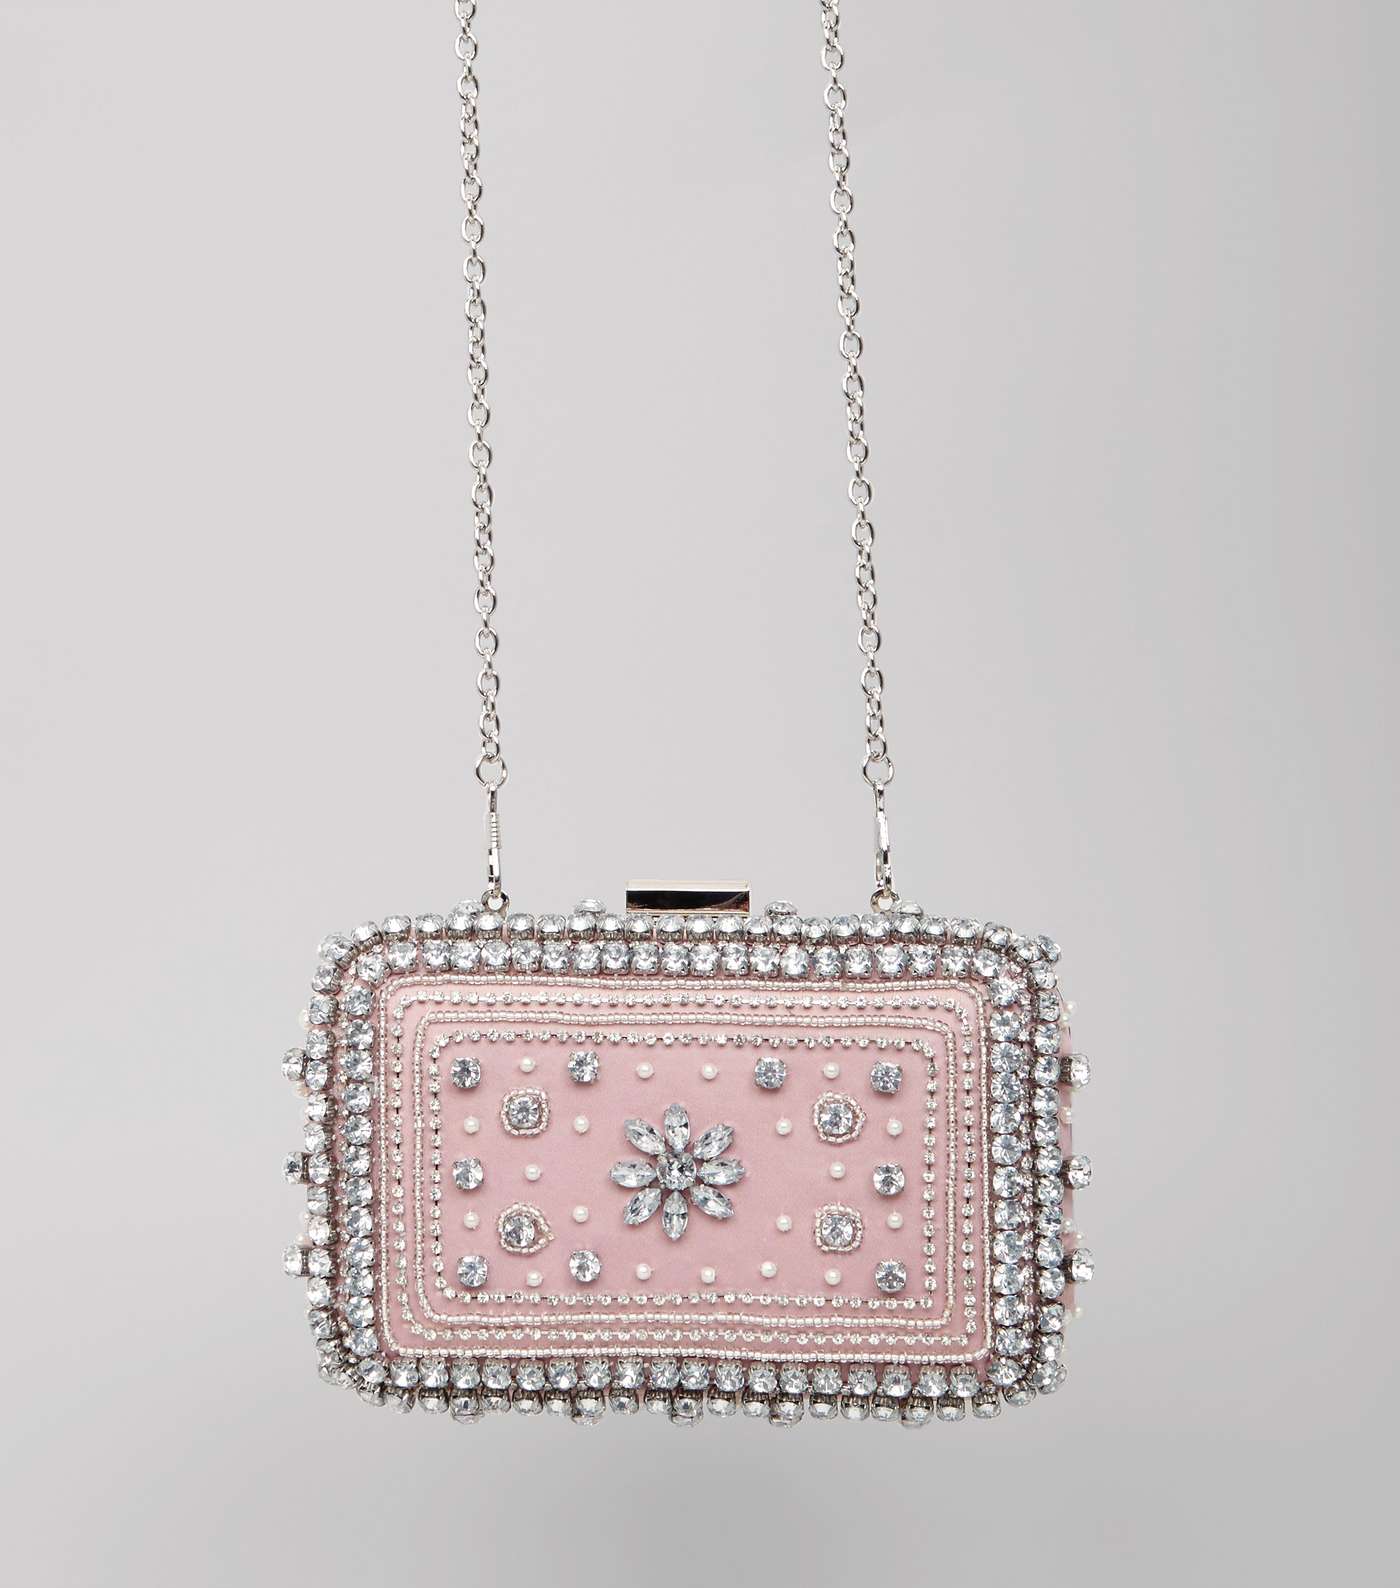 Pink Diamante Embellished Clutch Bag Image 3